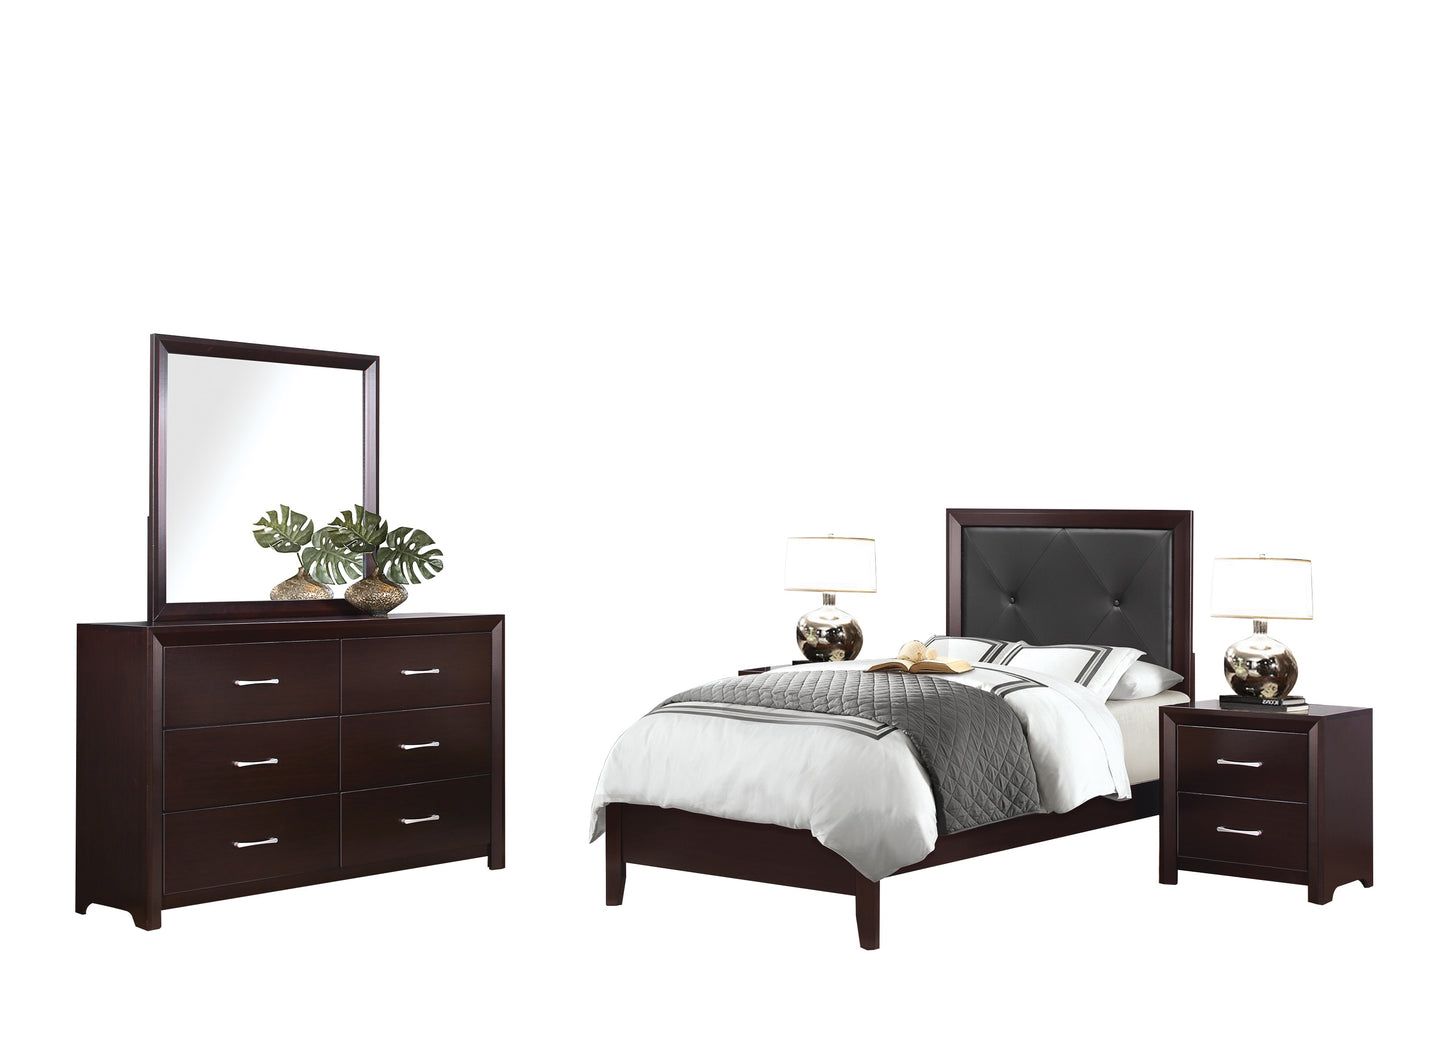 Eagen Casual 5PC Bedroom Set Twin Bed, 2 Nightstand, Dresser, Mirror in Brown Espresso